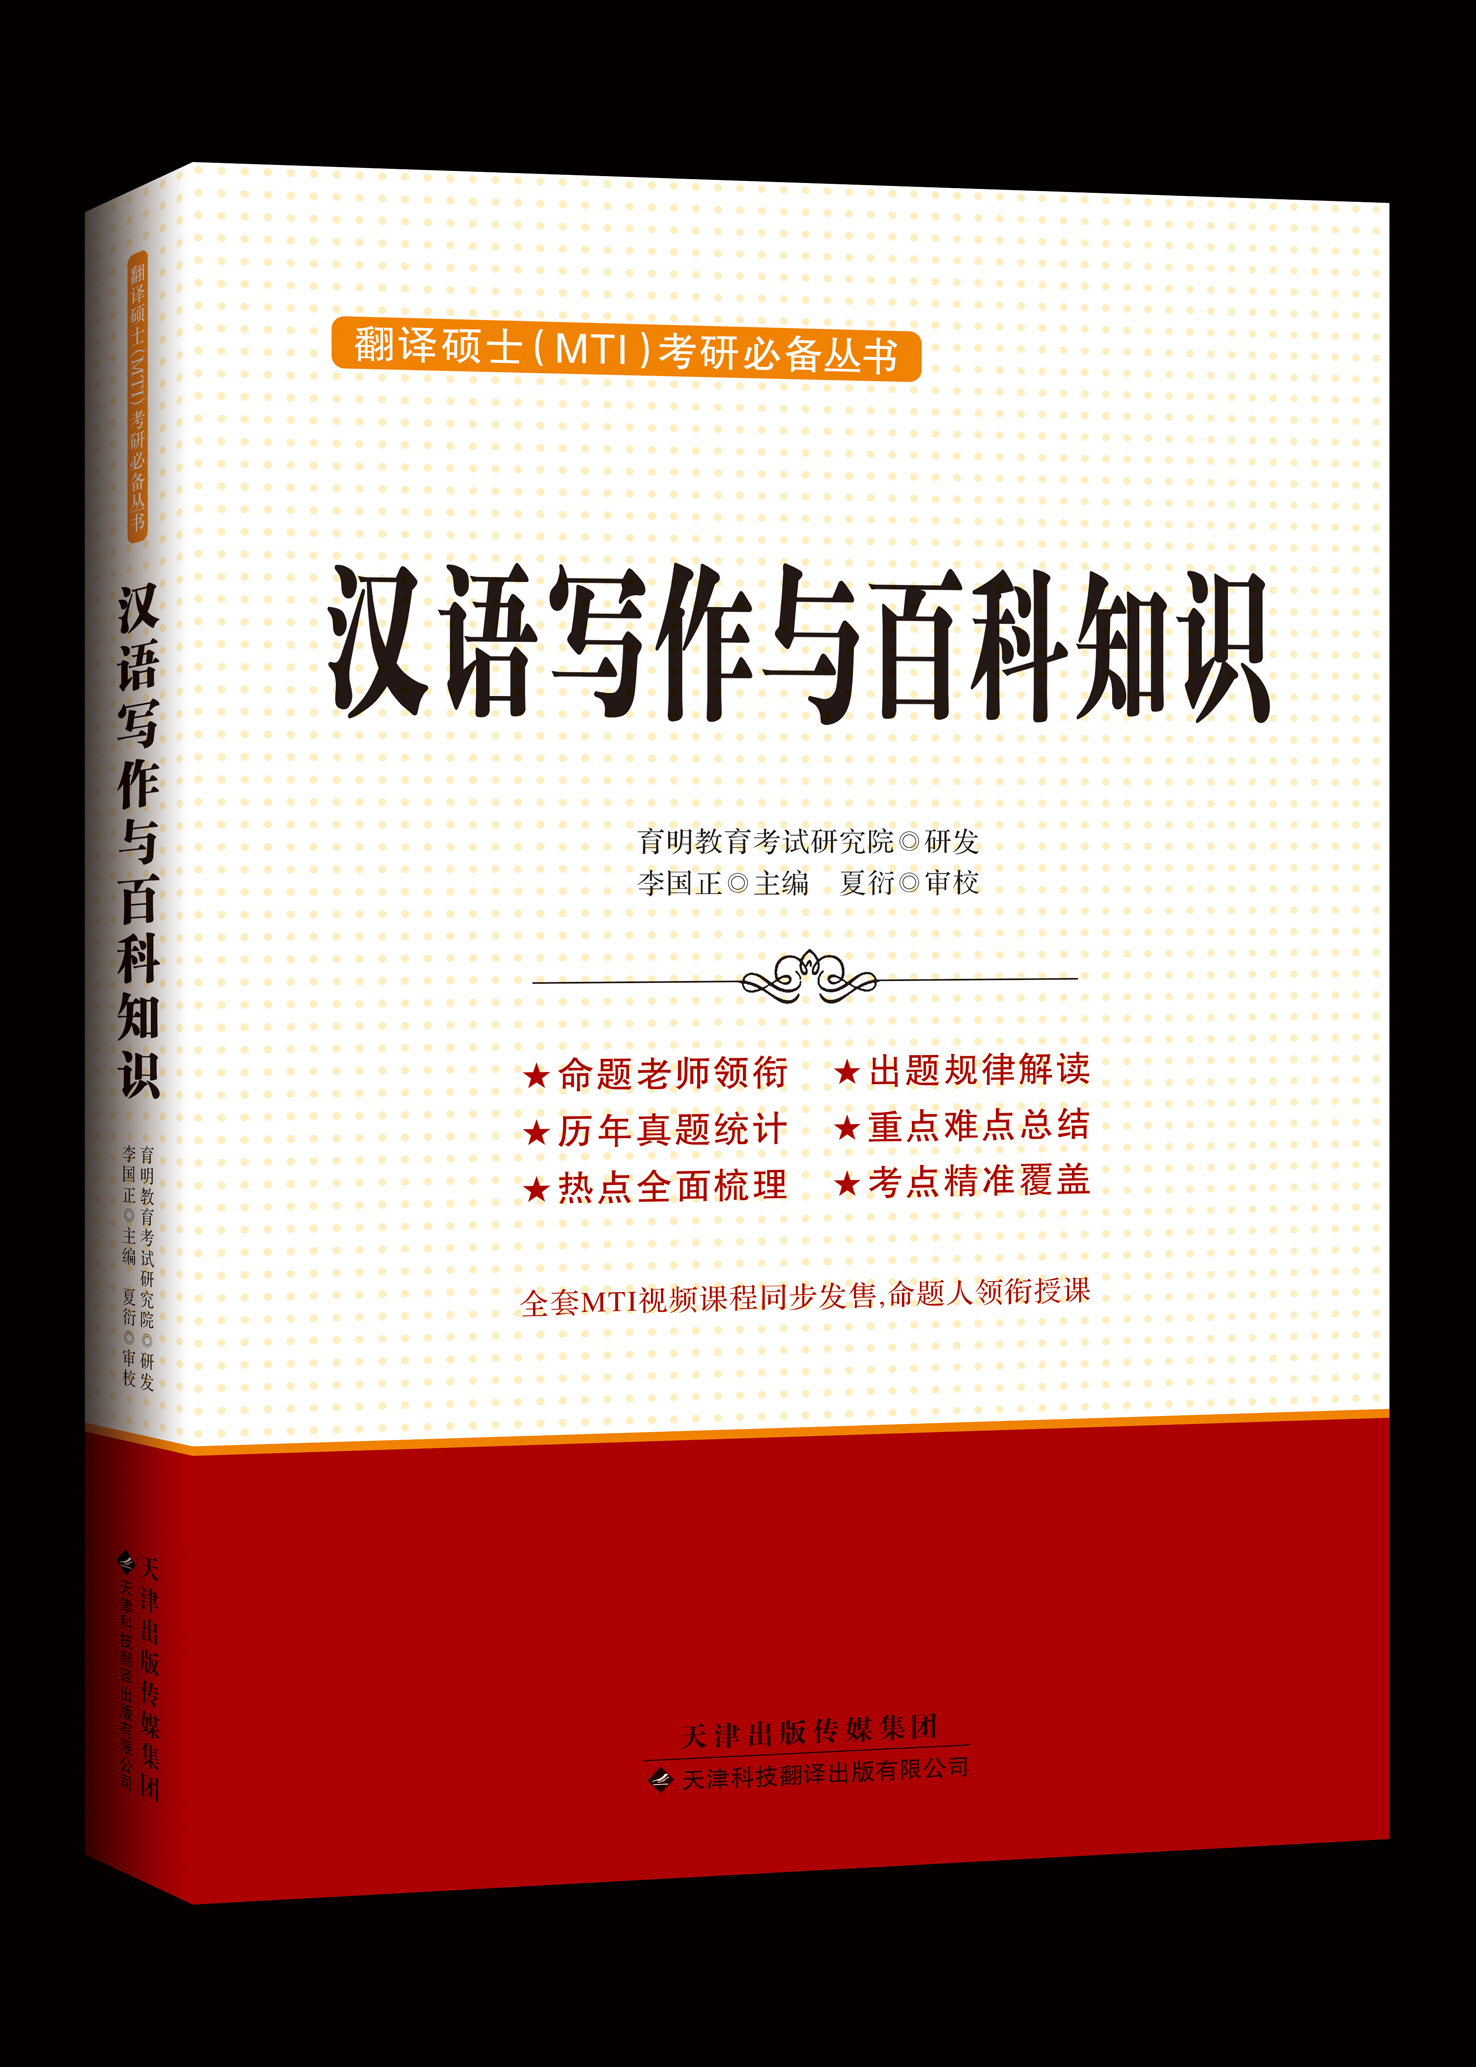 漢語寫作與百科知識